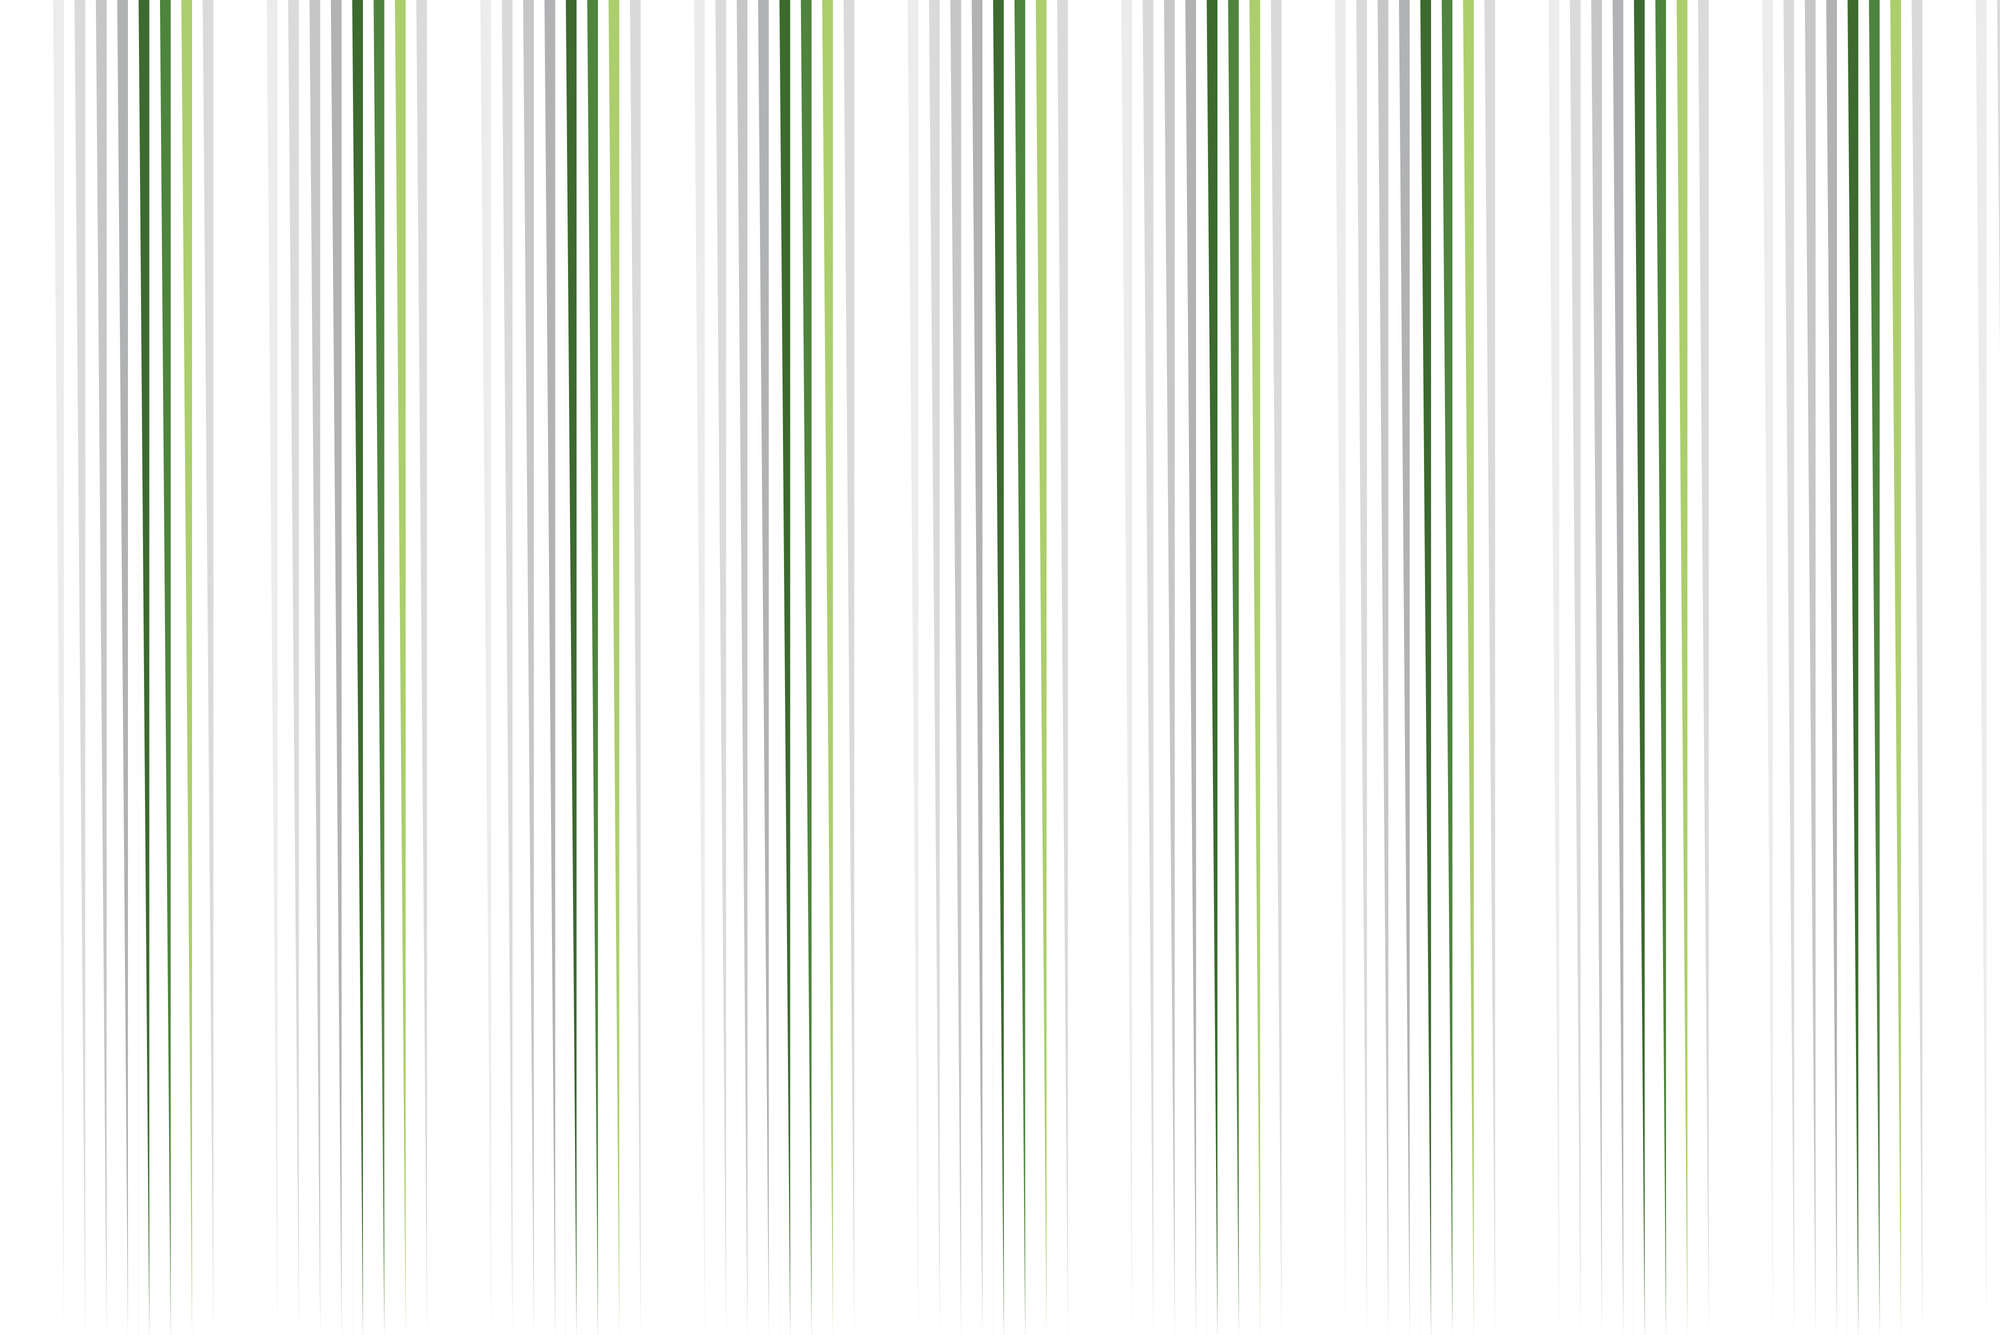             Design Fototapete dünner werdende Streifen weiß grün auf Premium Glattvlies
        